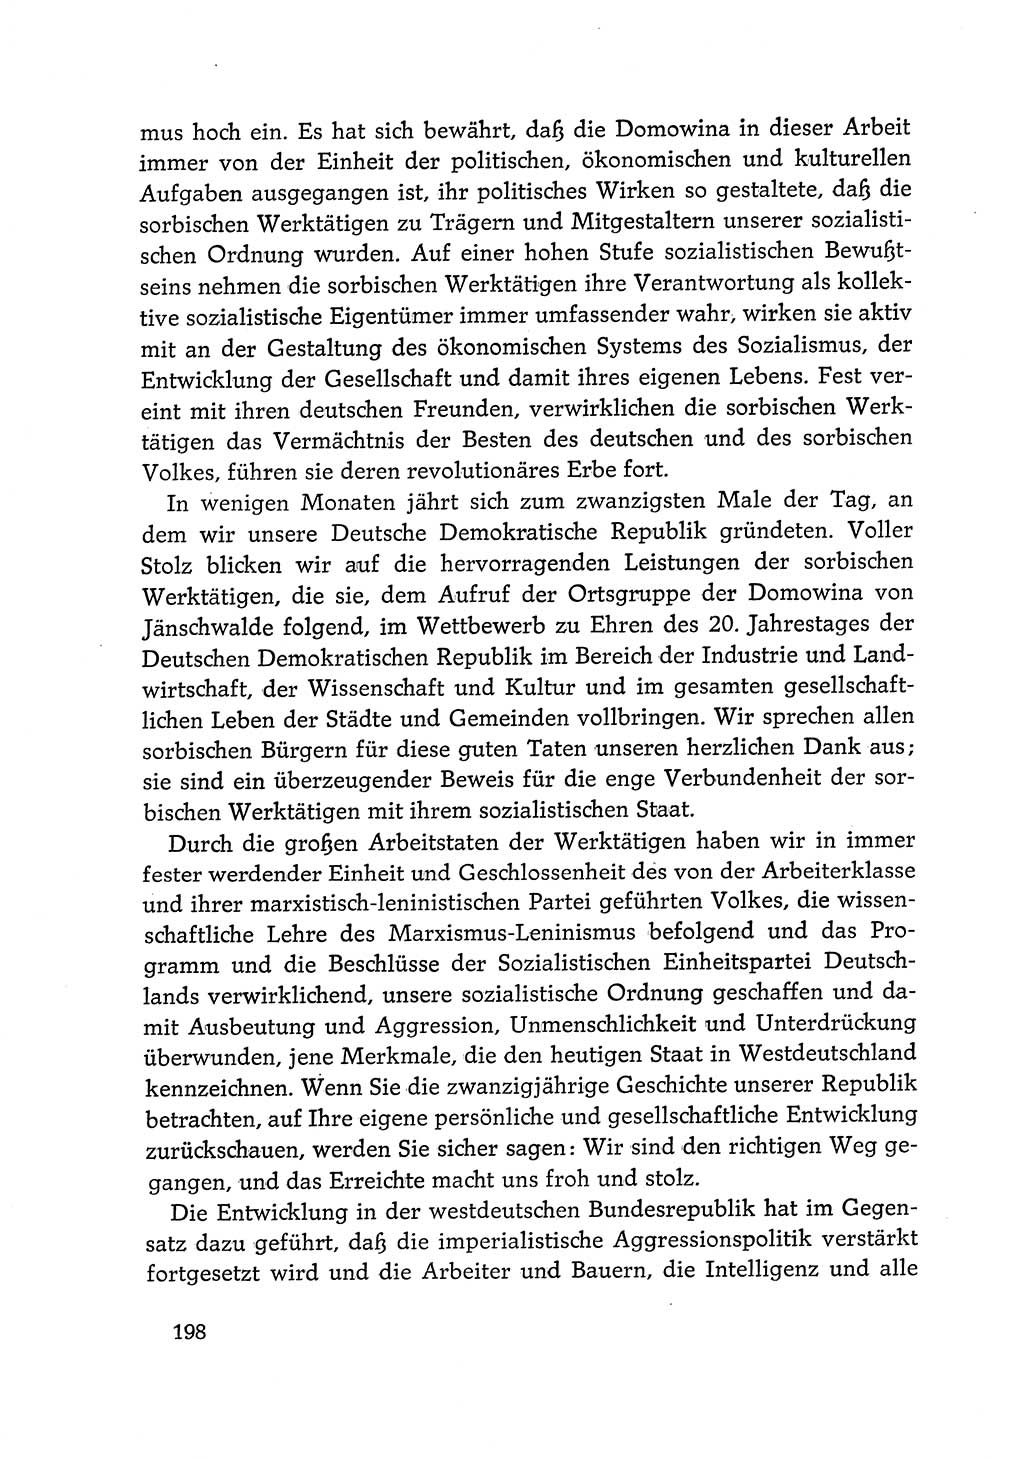 Dokumente der Sozialistischen Einheitspartei Deutschlands (SED) [Deutsche Demokratische Republik (DDR)] 1968-1969, Seite 198 (Dok. SED DDR 1968-1969, S. 198)